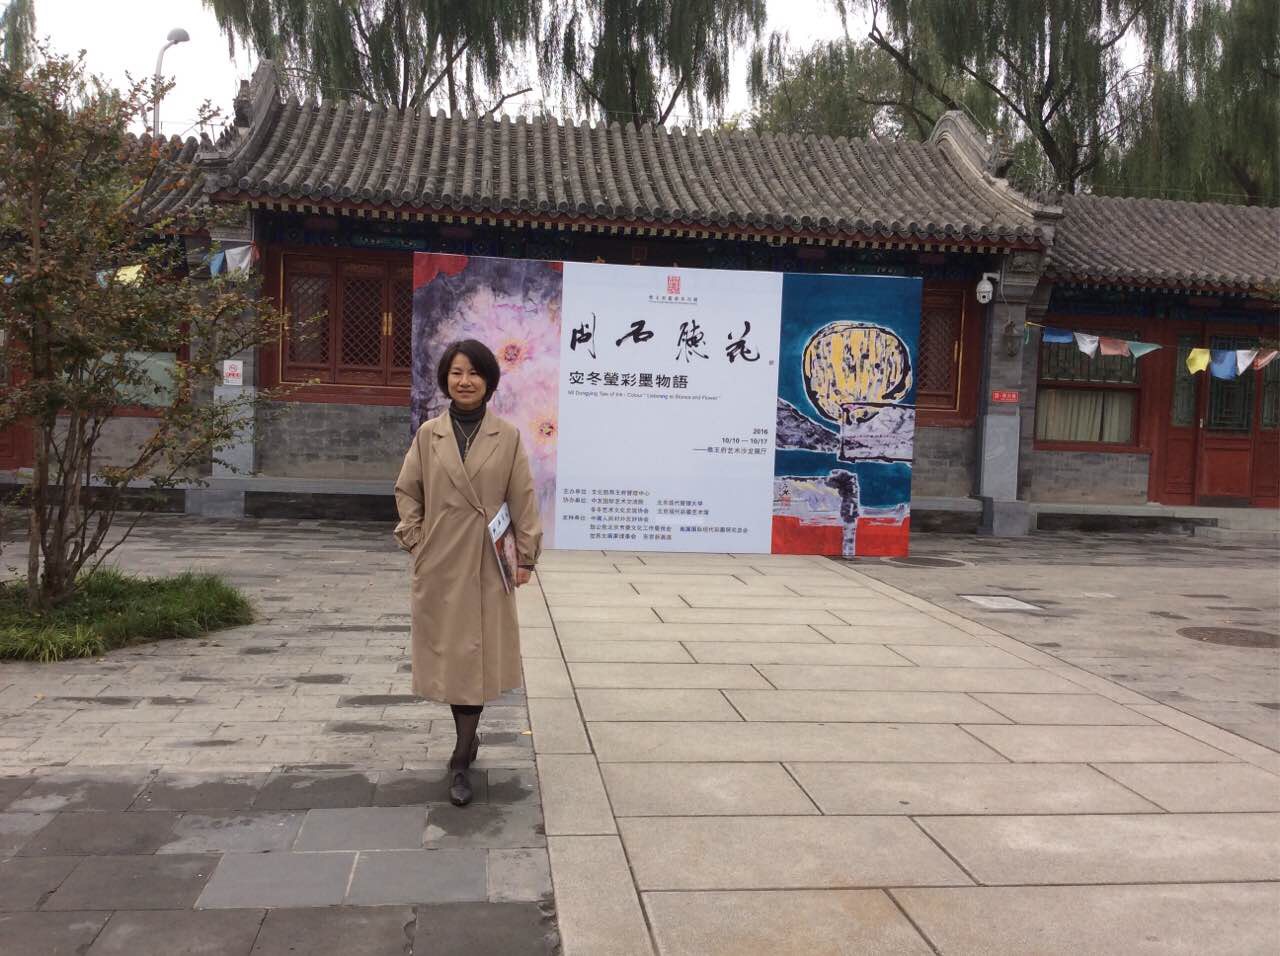 水墨画や彩墨画を描く宓冬瑩の北京恭王府での個展